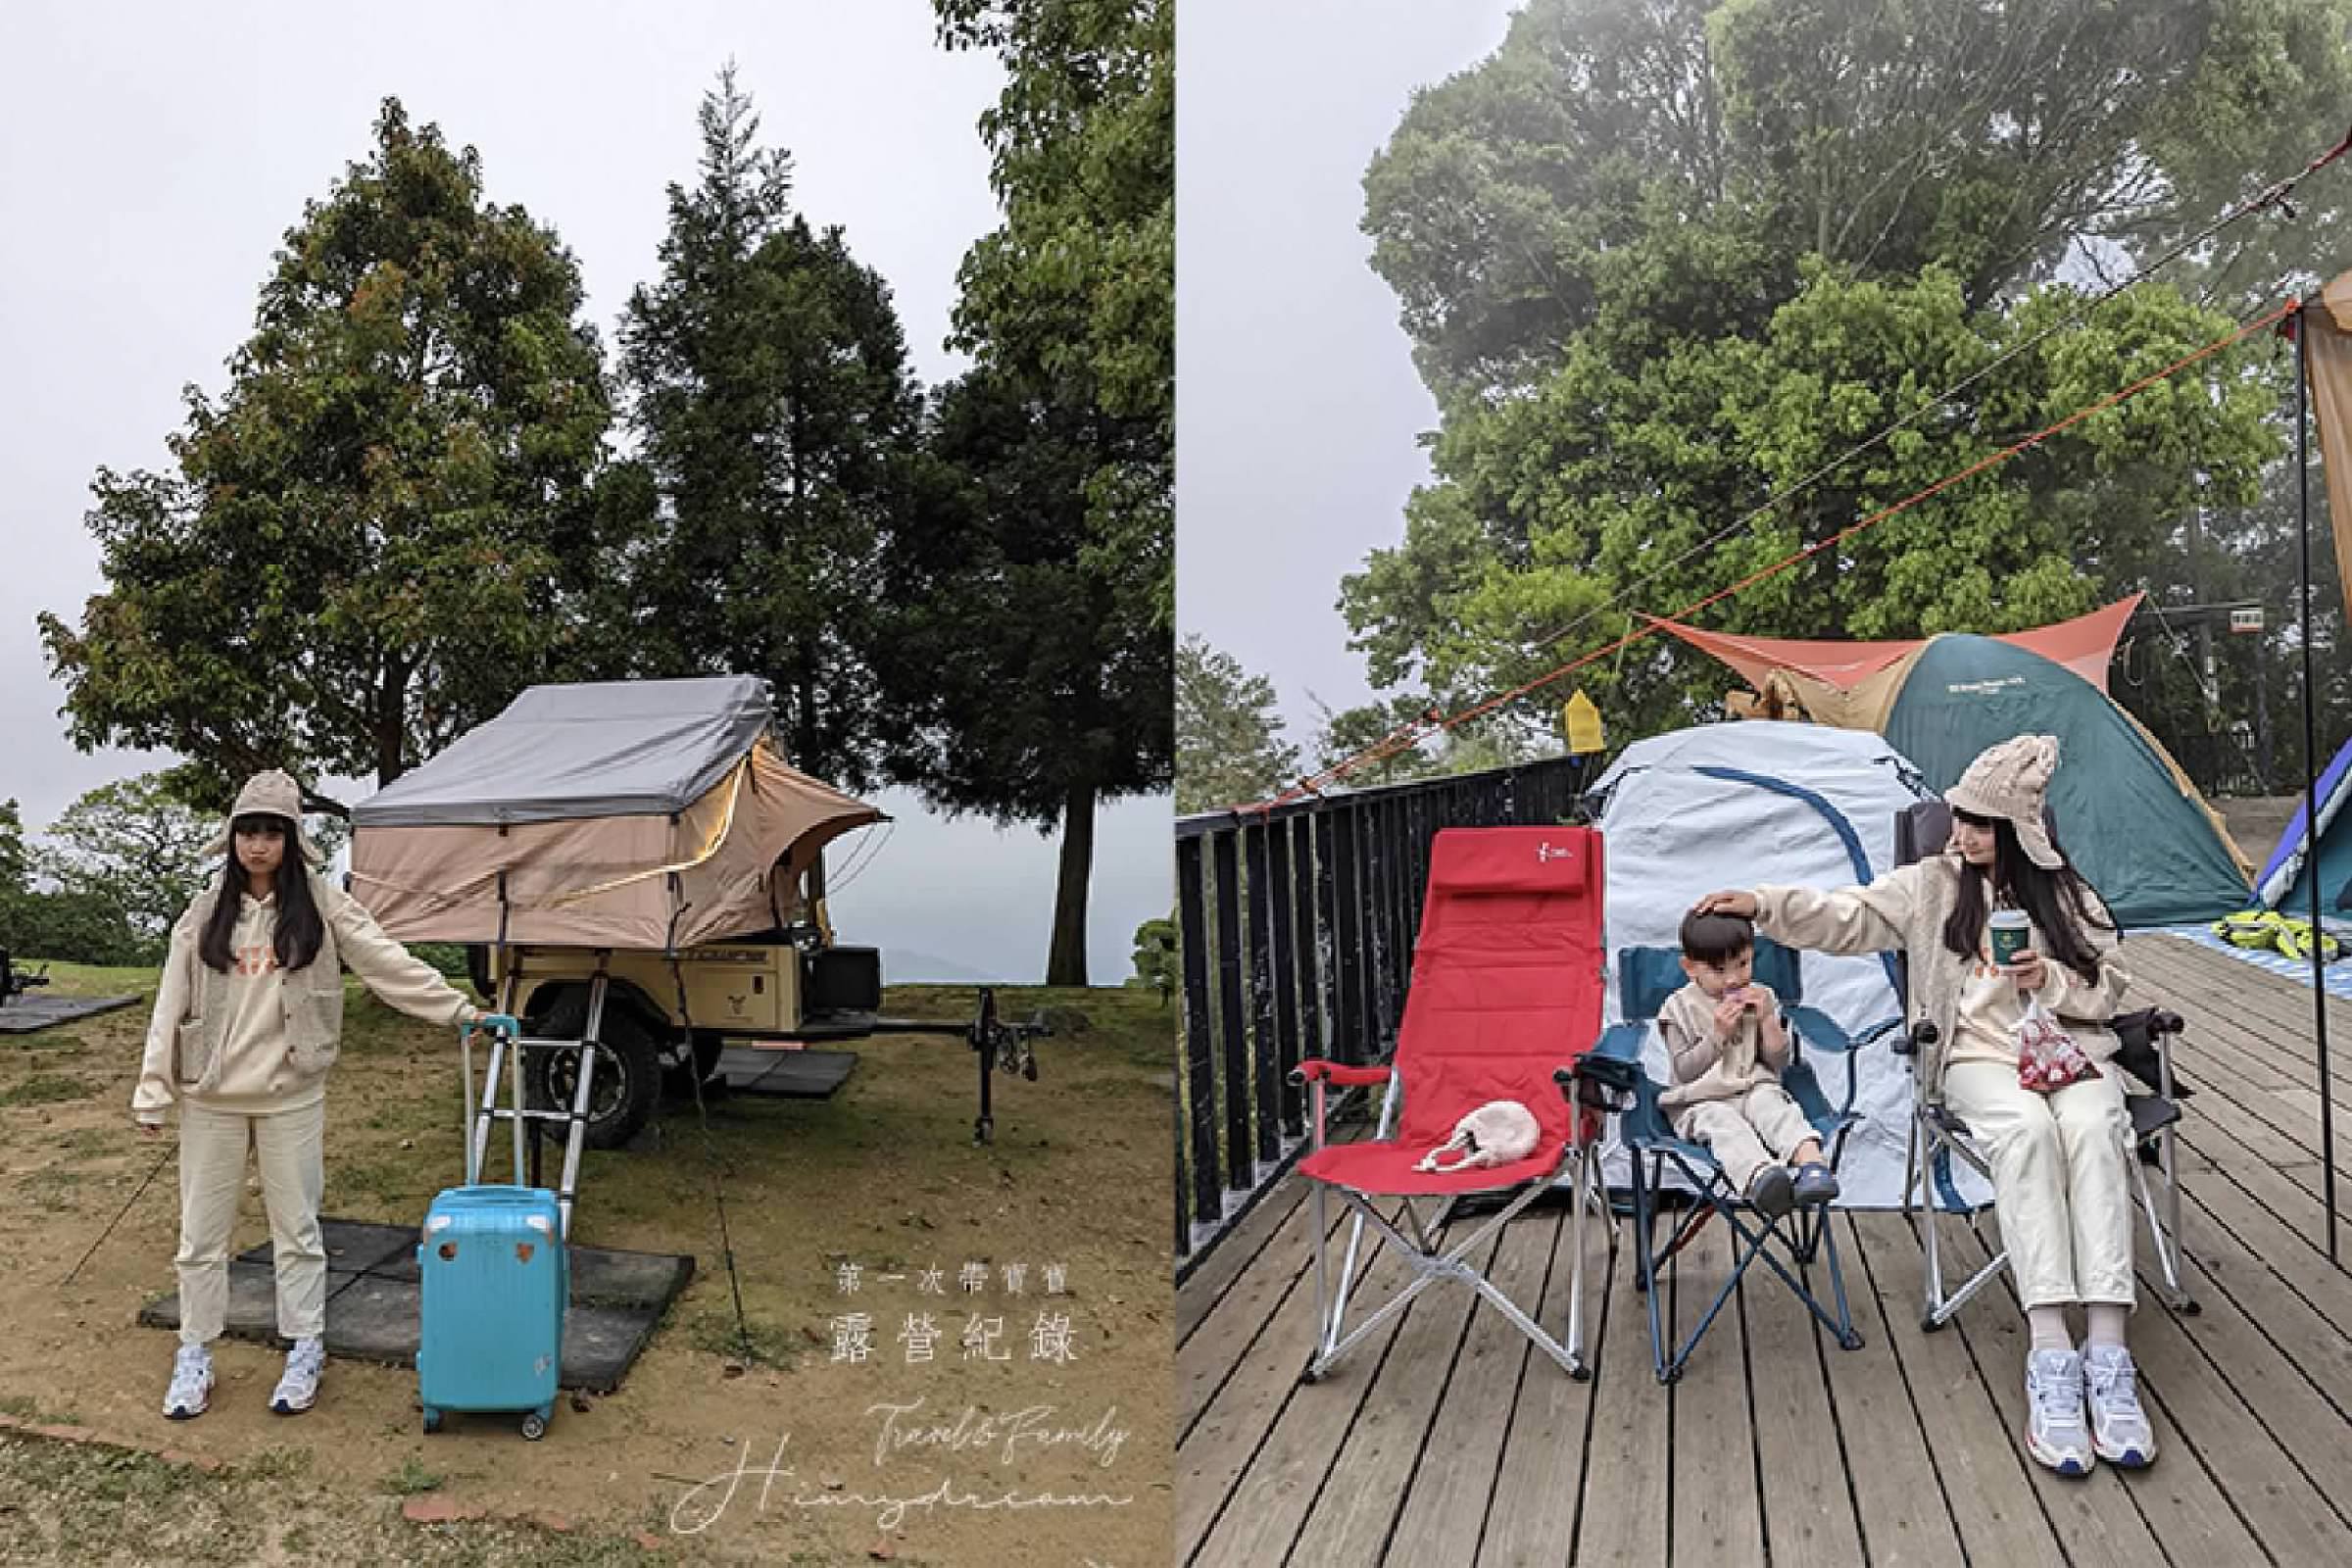 [新竹景點]尖石鄉露營 帶2歲孩子去露營 準備物品 體驗第一次帶孩子露營 露營裝備 新竹親子行程推薦